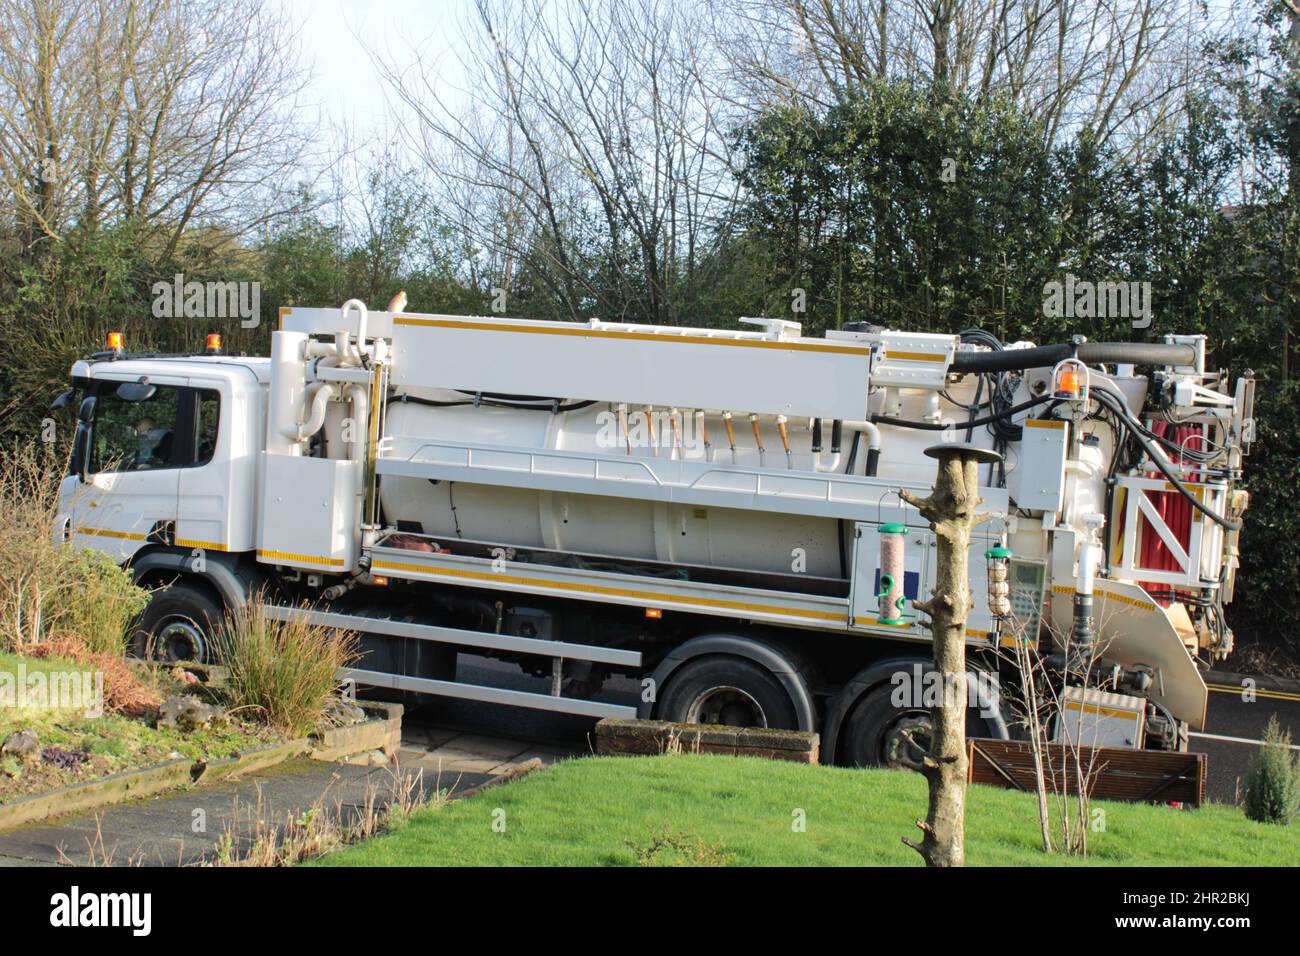 Vehículo de mantenimiento de aguas residuales Reino Unido con manguera de presión en la parte trasera Foto de stock